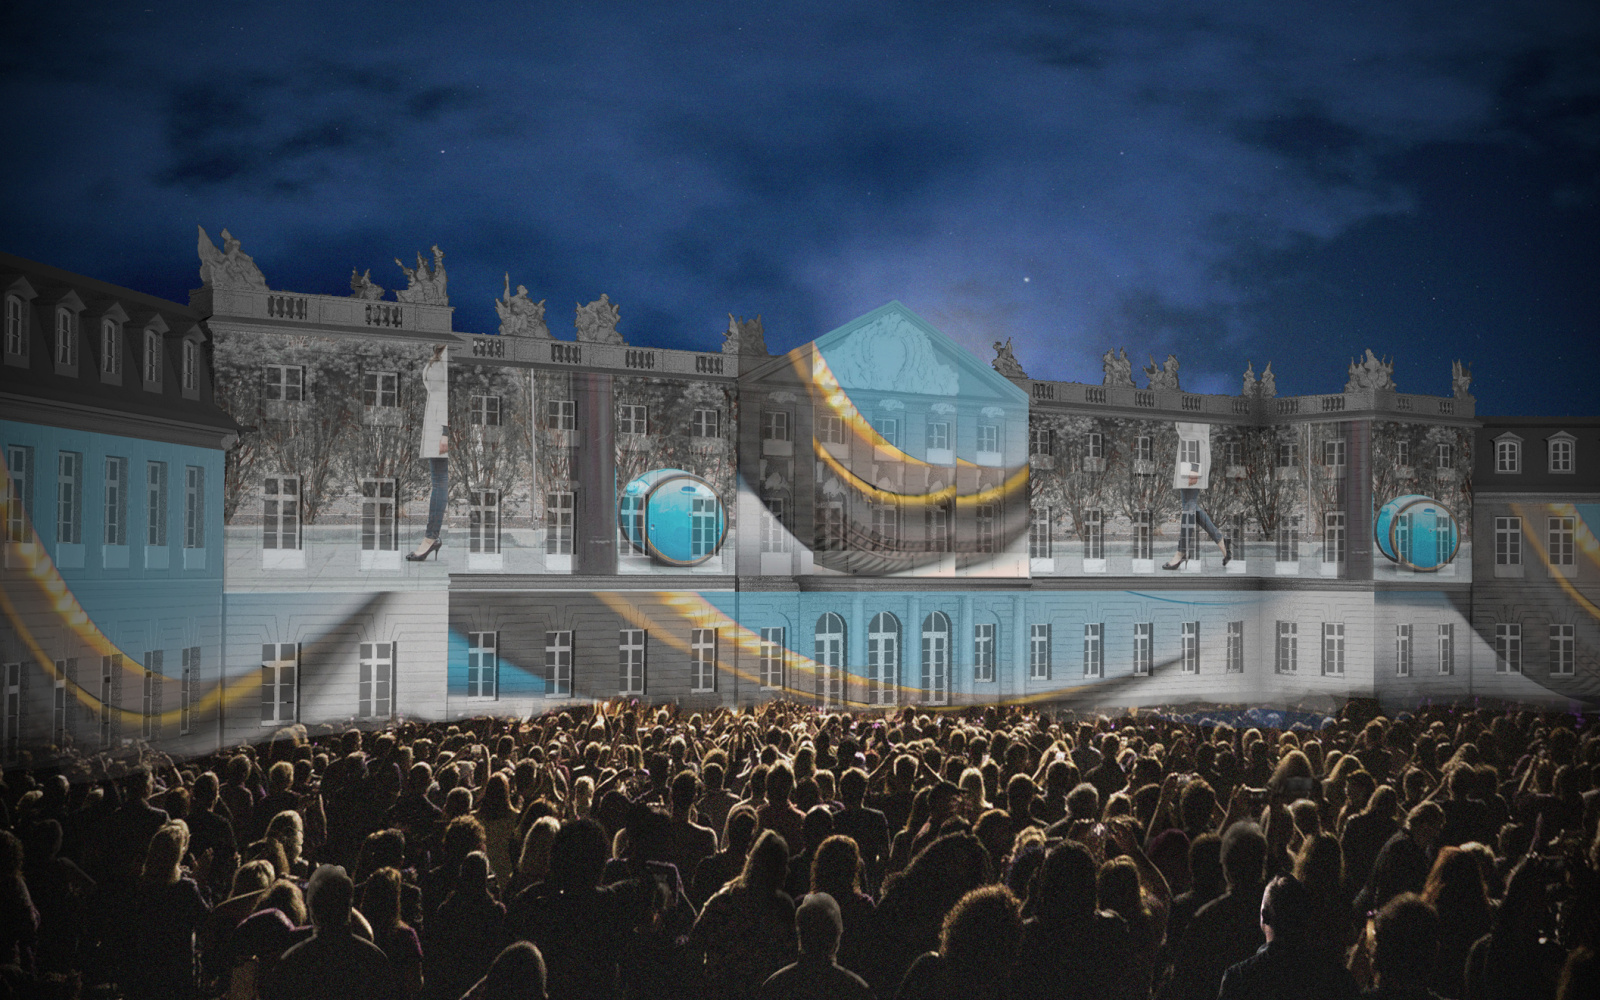 Blau/Graue Lichtprojektion auf Schloss vor Publikum